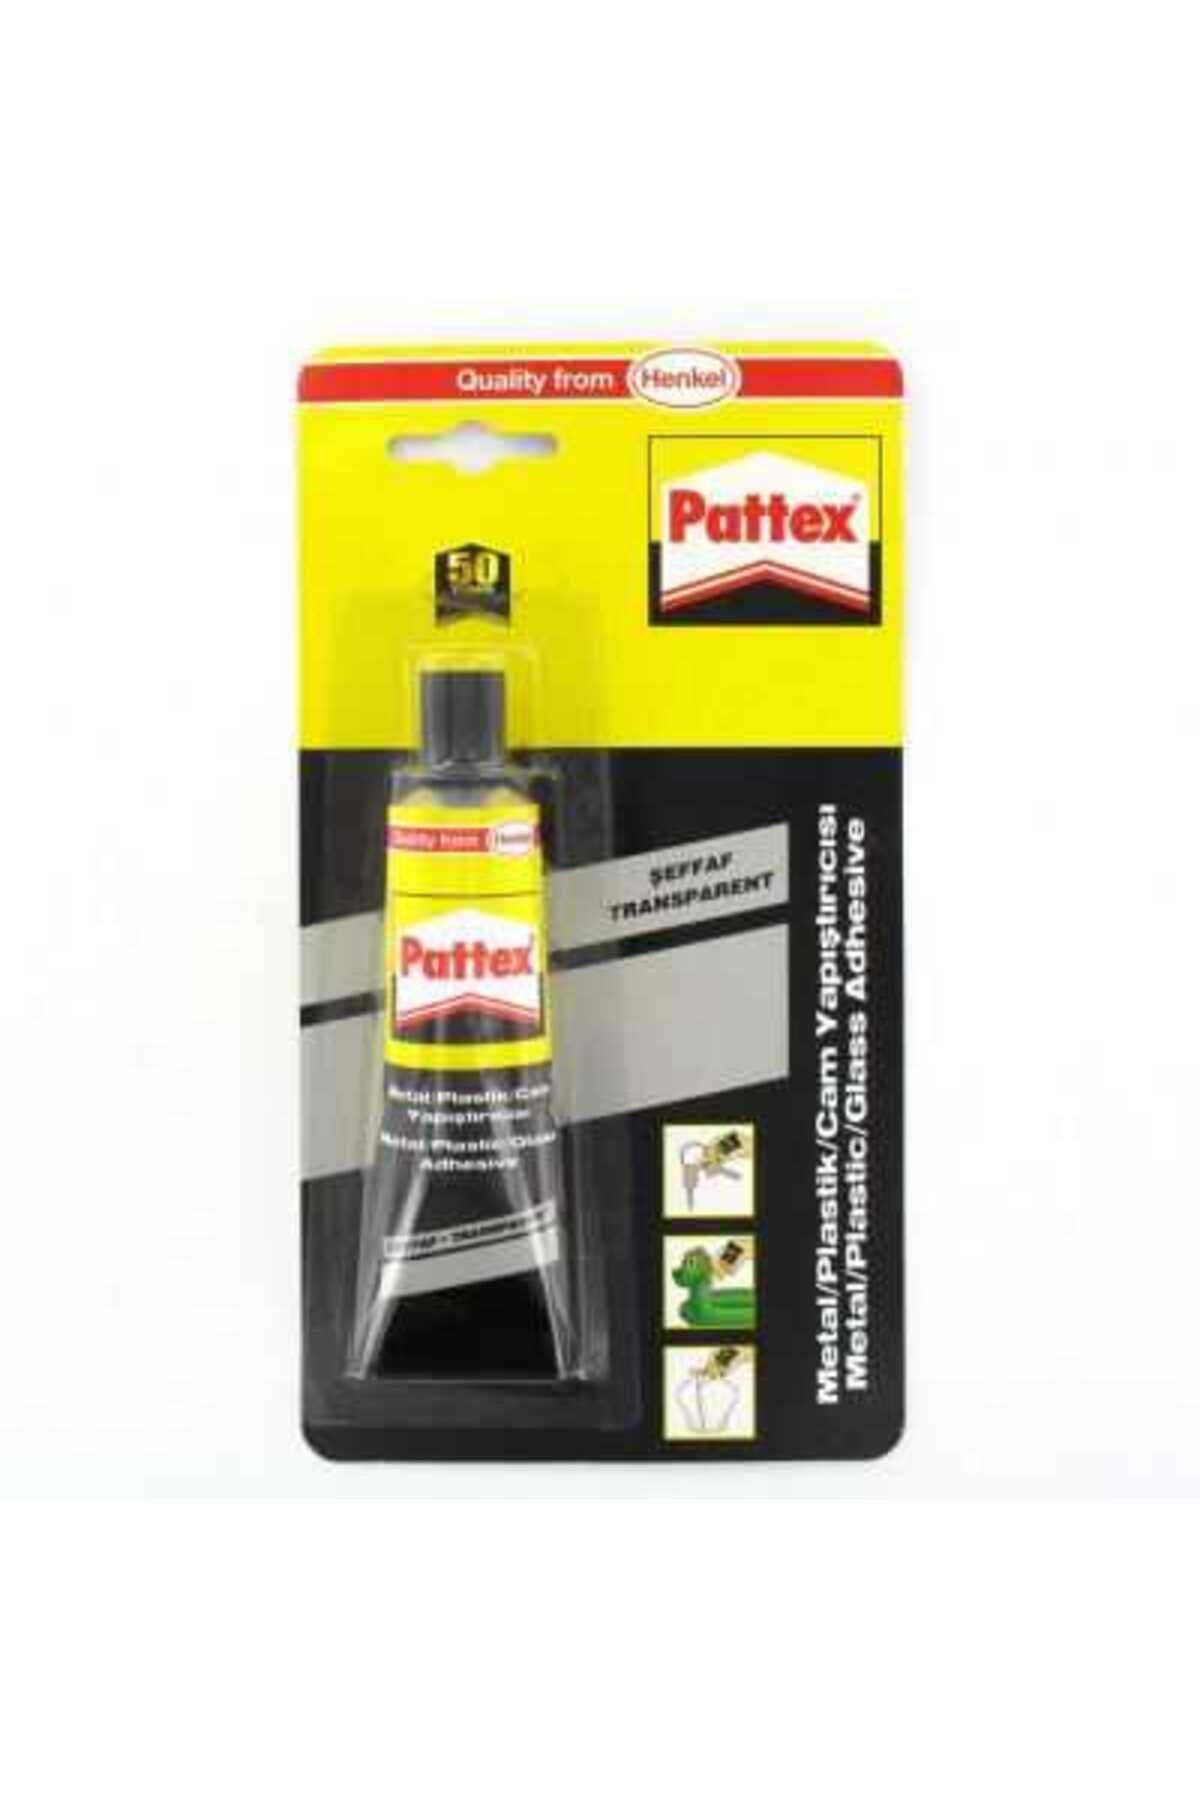 Pattex Metal/plastik/cam Yapıştırıcı 50 ml 1419320